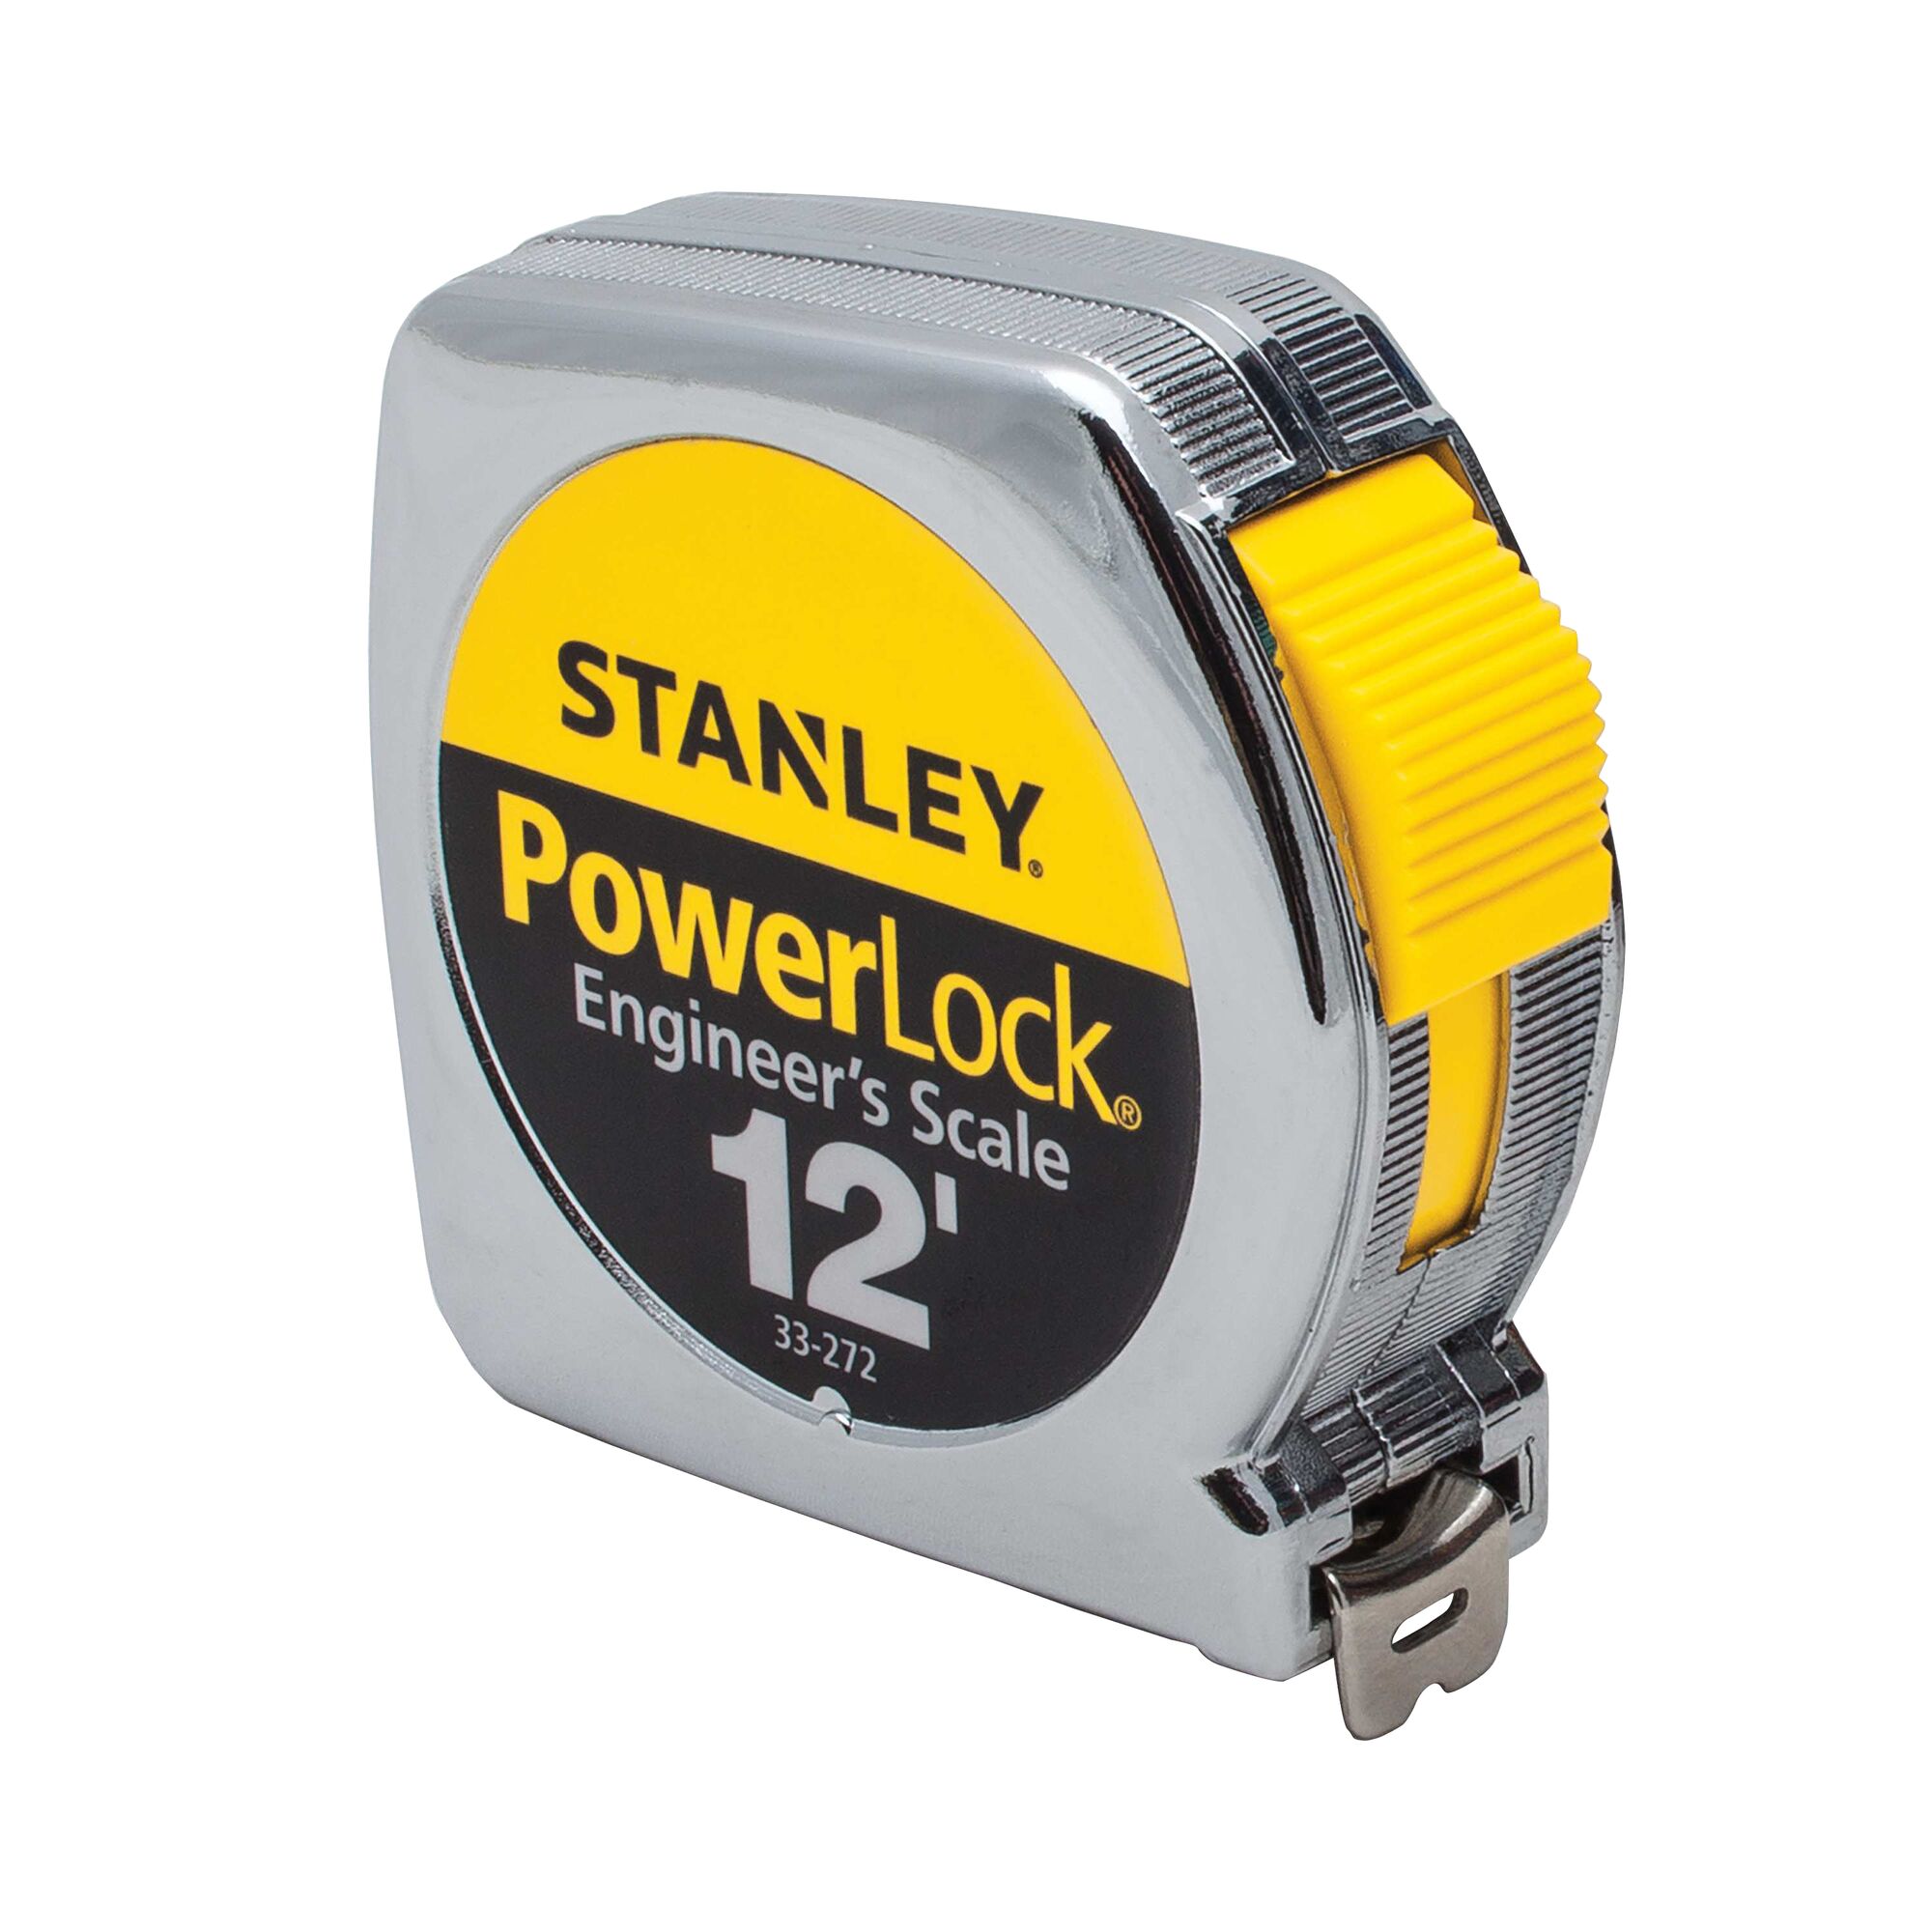 L x 0.75 in Stanley  PowerLock  12 ft W Tape Measure  Silver  1 pk 